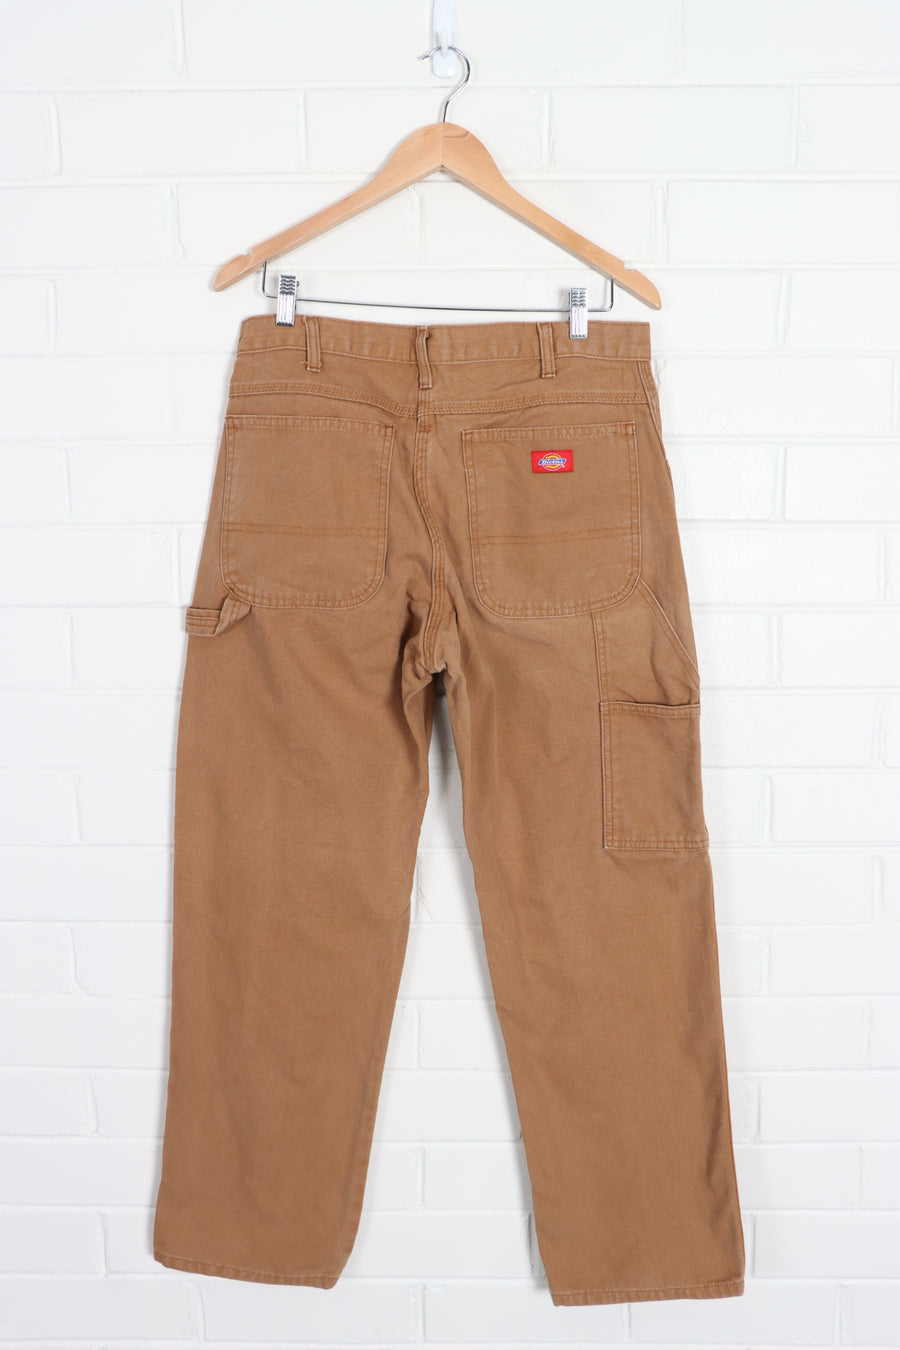 DICKIES Tan Workwear Pants (32 x 30) - Vintage Sole Melbourne